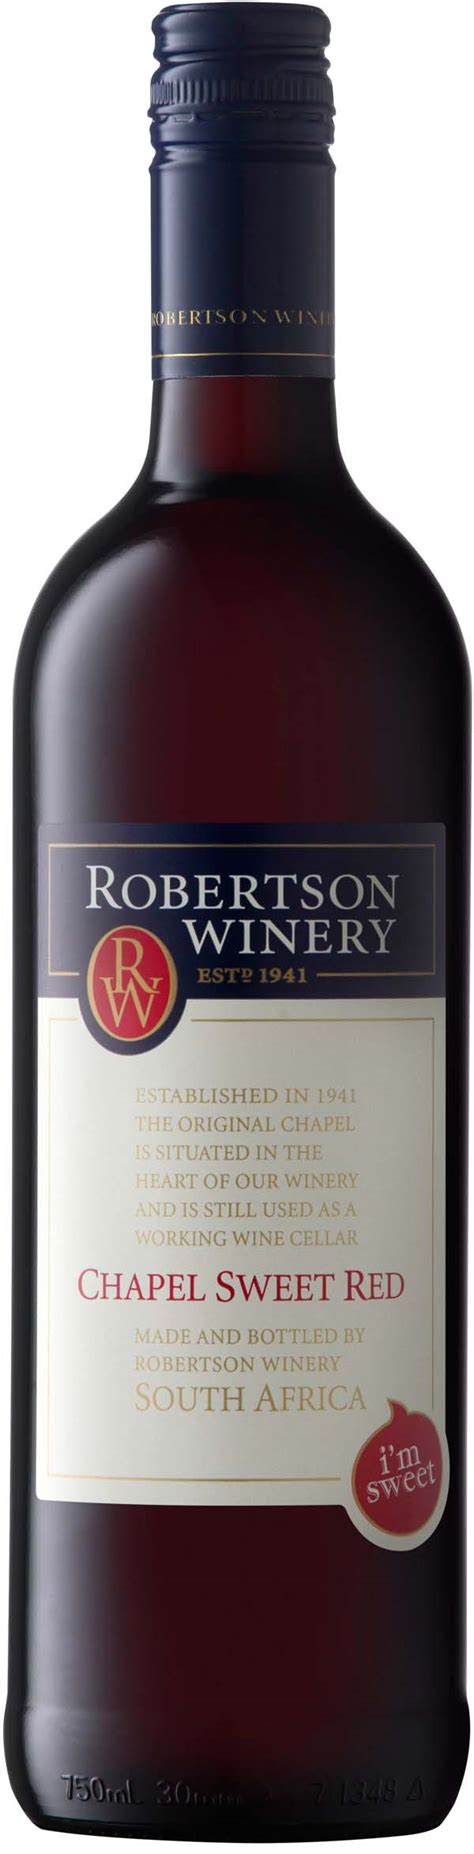 robertson winery